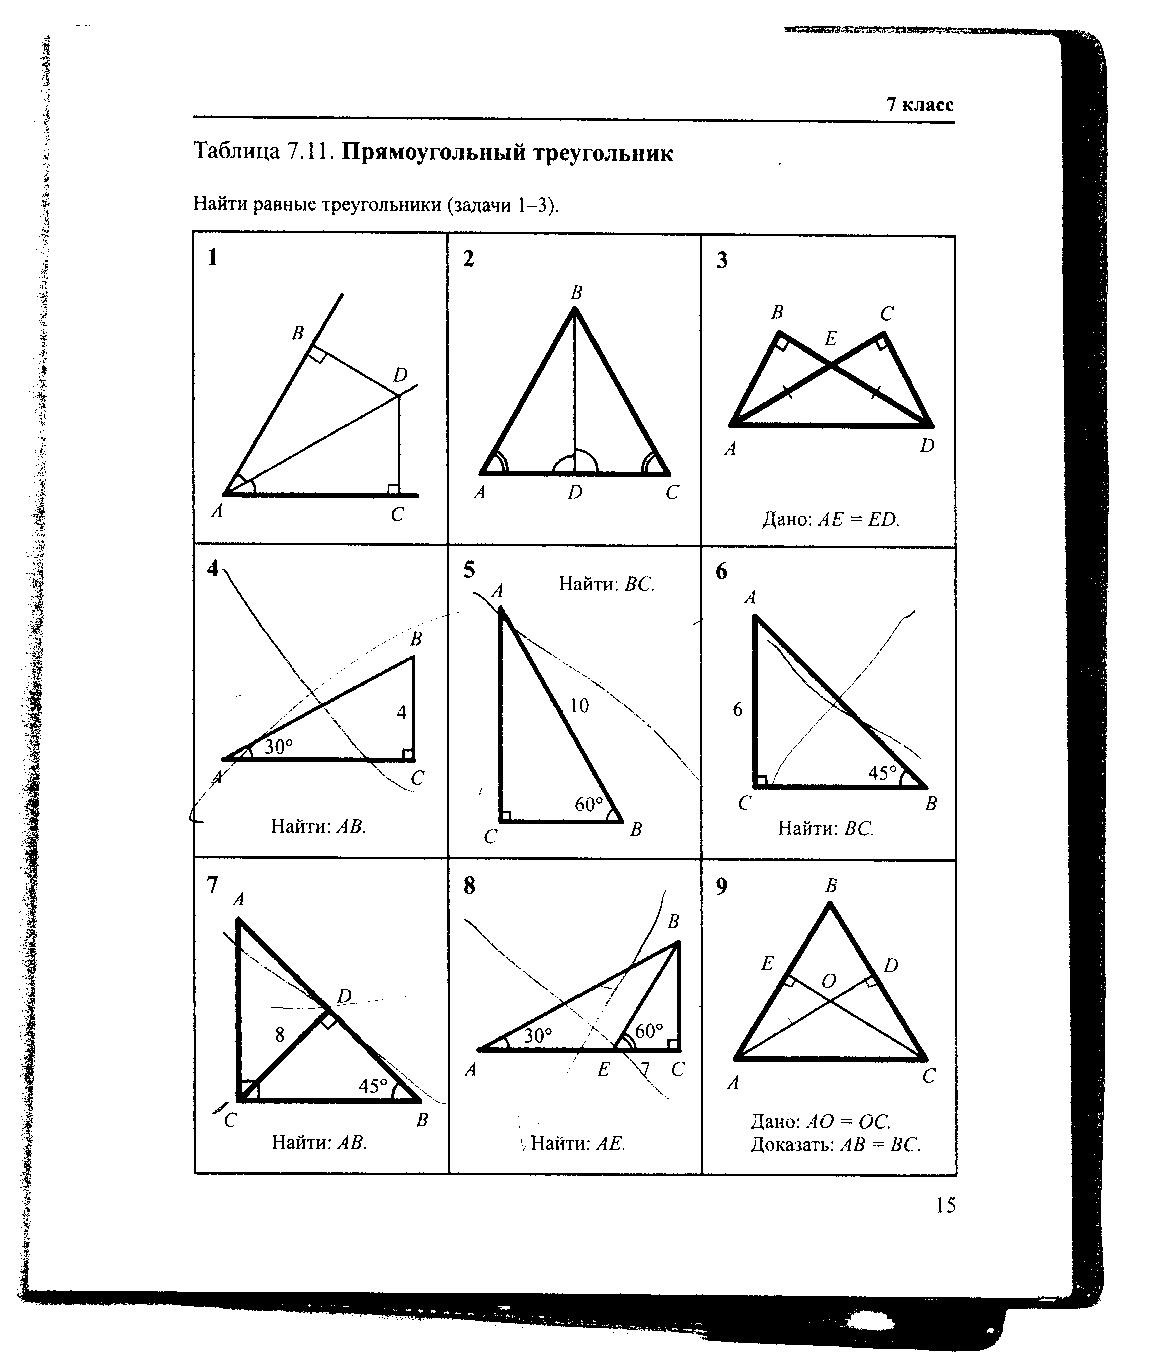 Задачи на готовых чертежах 7 9. Геометрия Рабинович 7-9 класс задачи на готовых чертежах. Гдз по геометрии Рабинович 7-9 класс задачи на готовых чертежах. Гдз Рабинович 7-9 класс геометрия ответы. Таблица 7.11 прямоугольный треугольник 7 класс.